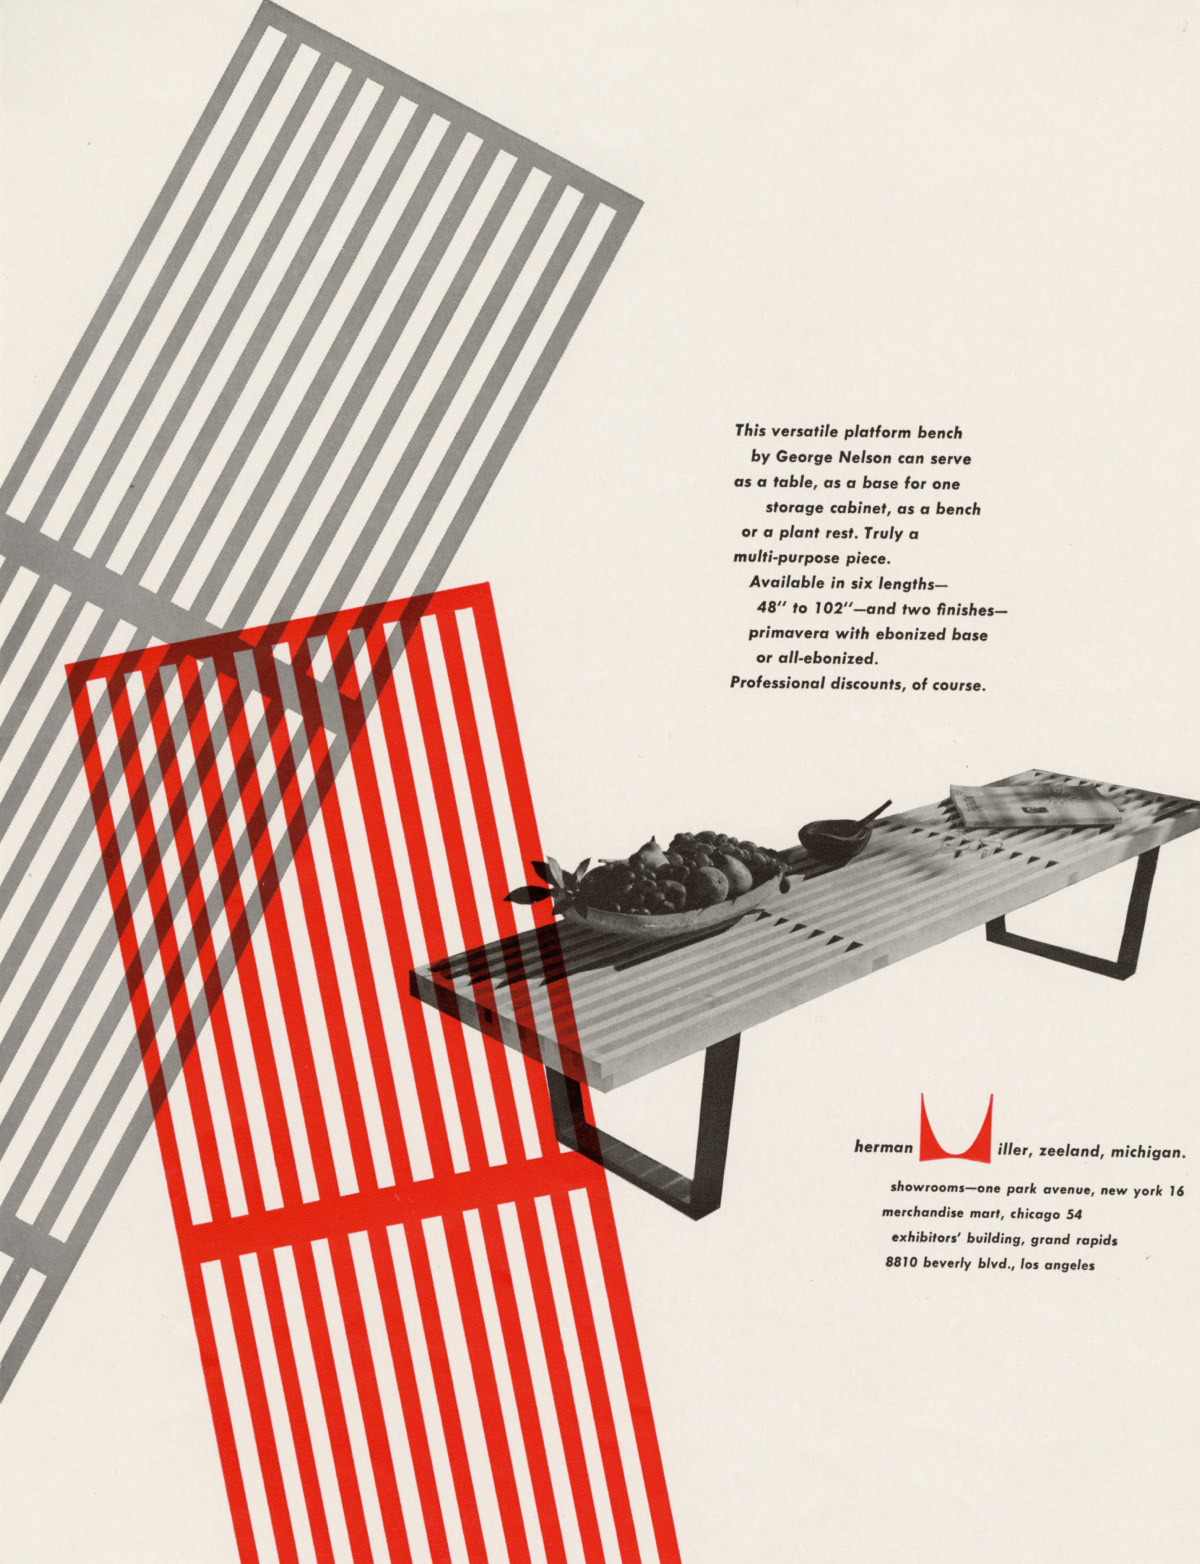 ネルソンベンチトップの形をしたグレーと赤の鮮やかグラフィックを特徴とする広告。付随する宣伝用テキストと、小さな装飾品が置かれたネルソンベンチを斜めから見た画像の左に描かれている